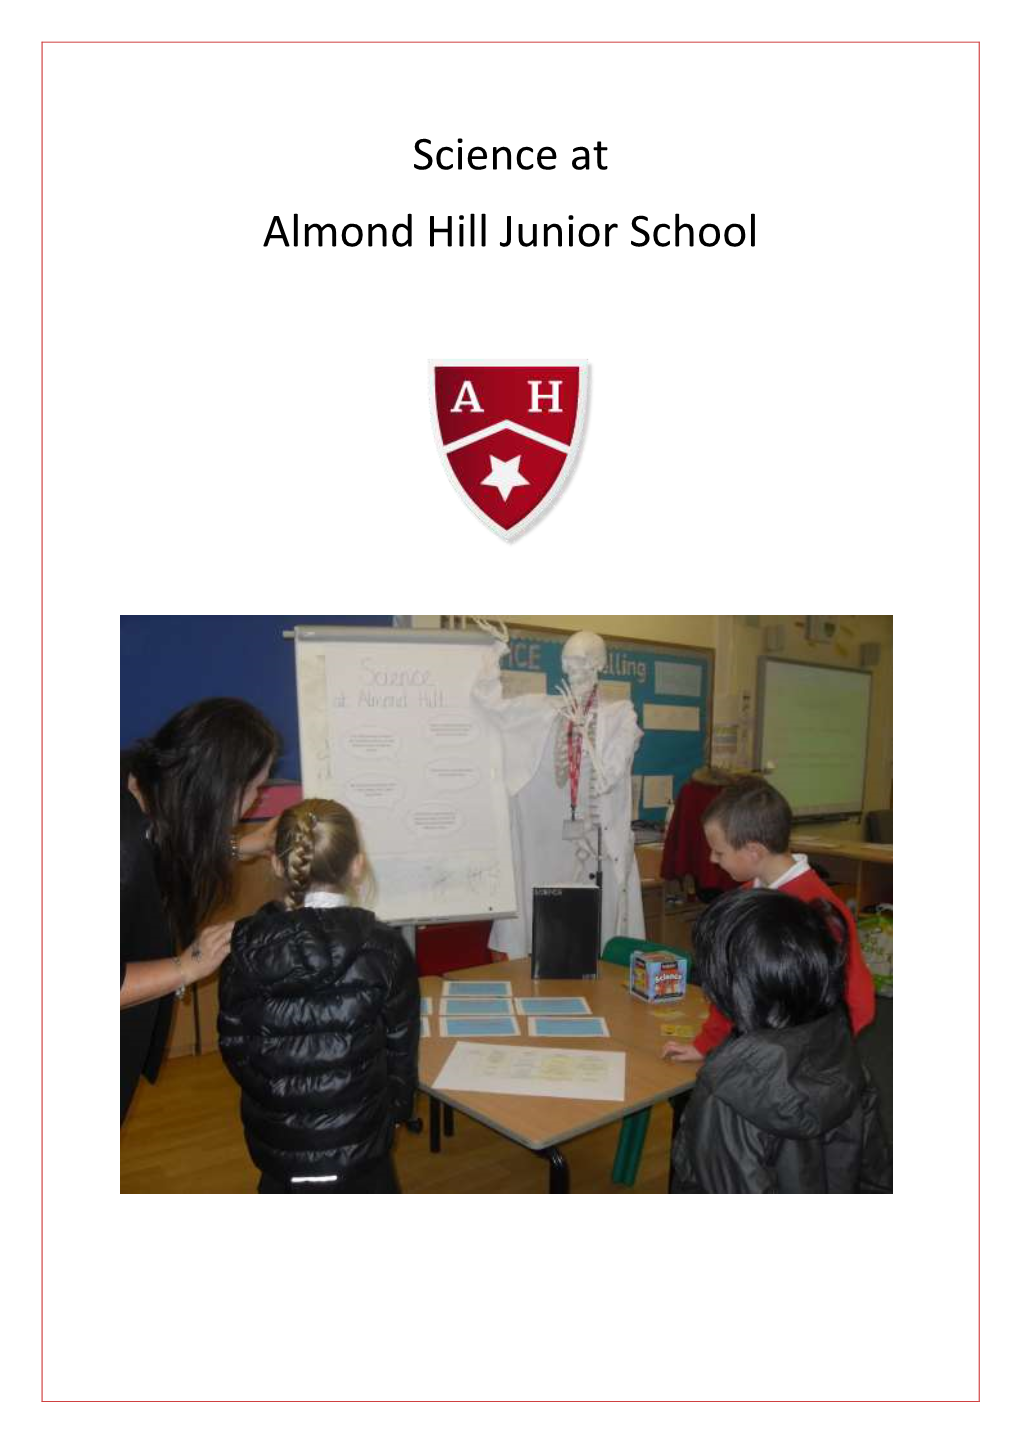 Science at Almond Hill Junior School